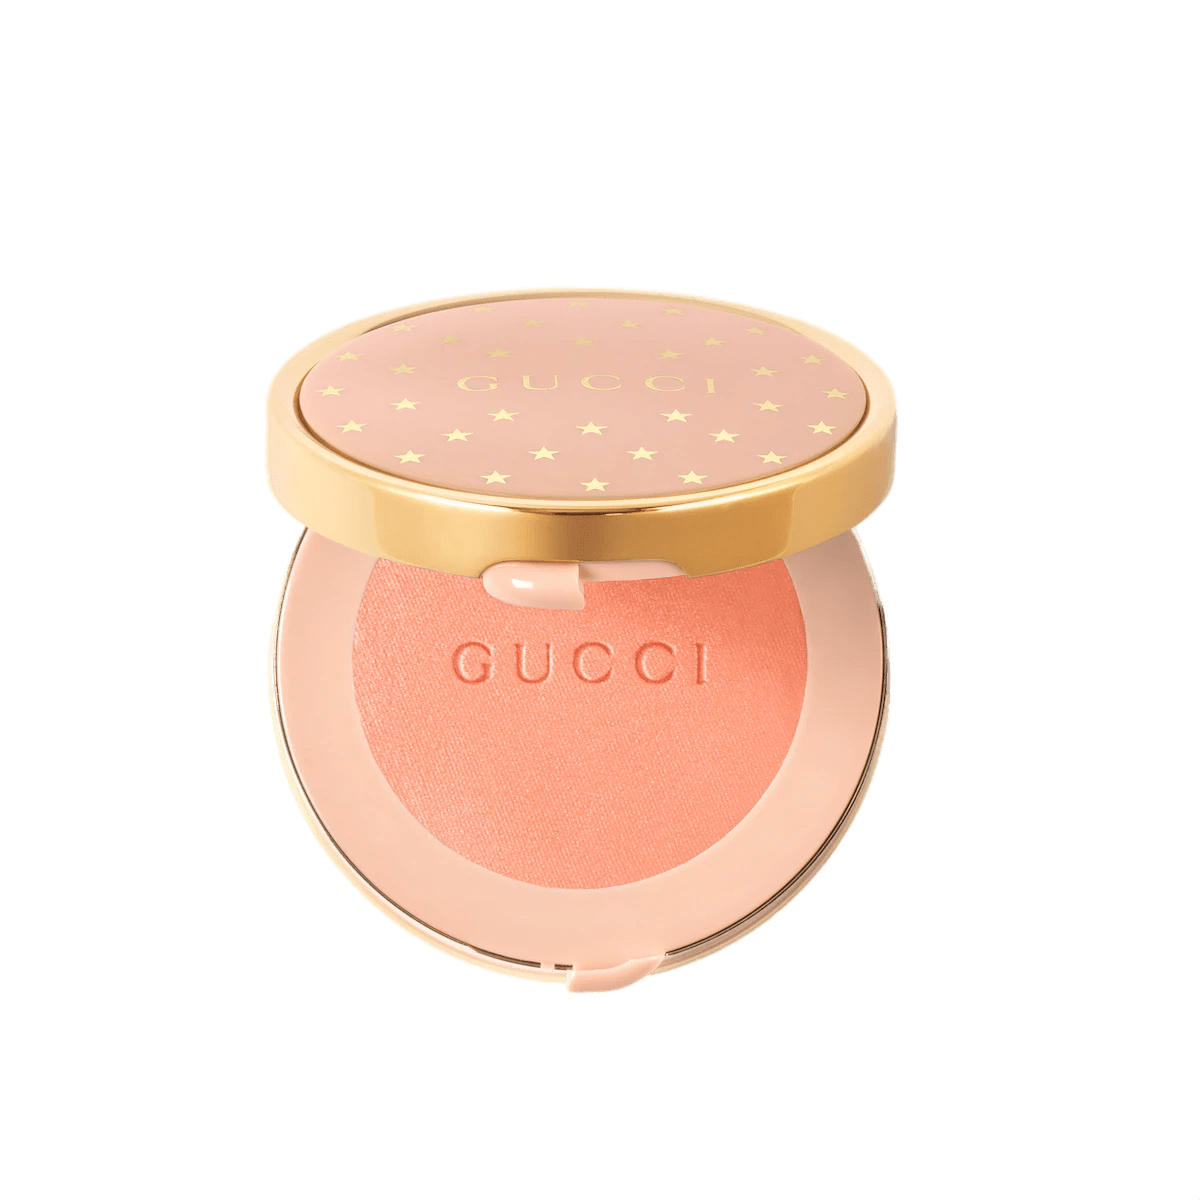 Gucci Beauty Blush De Beauté #02 Tender Apricot